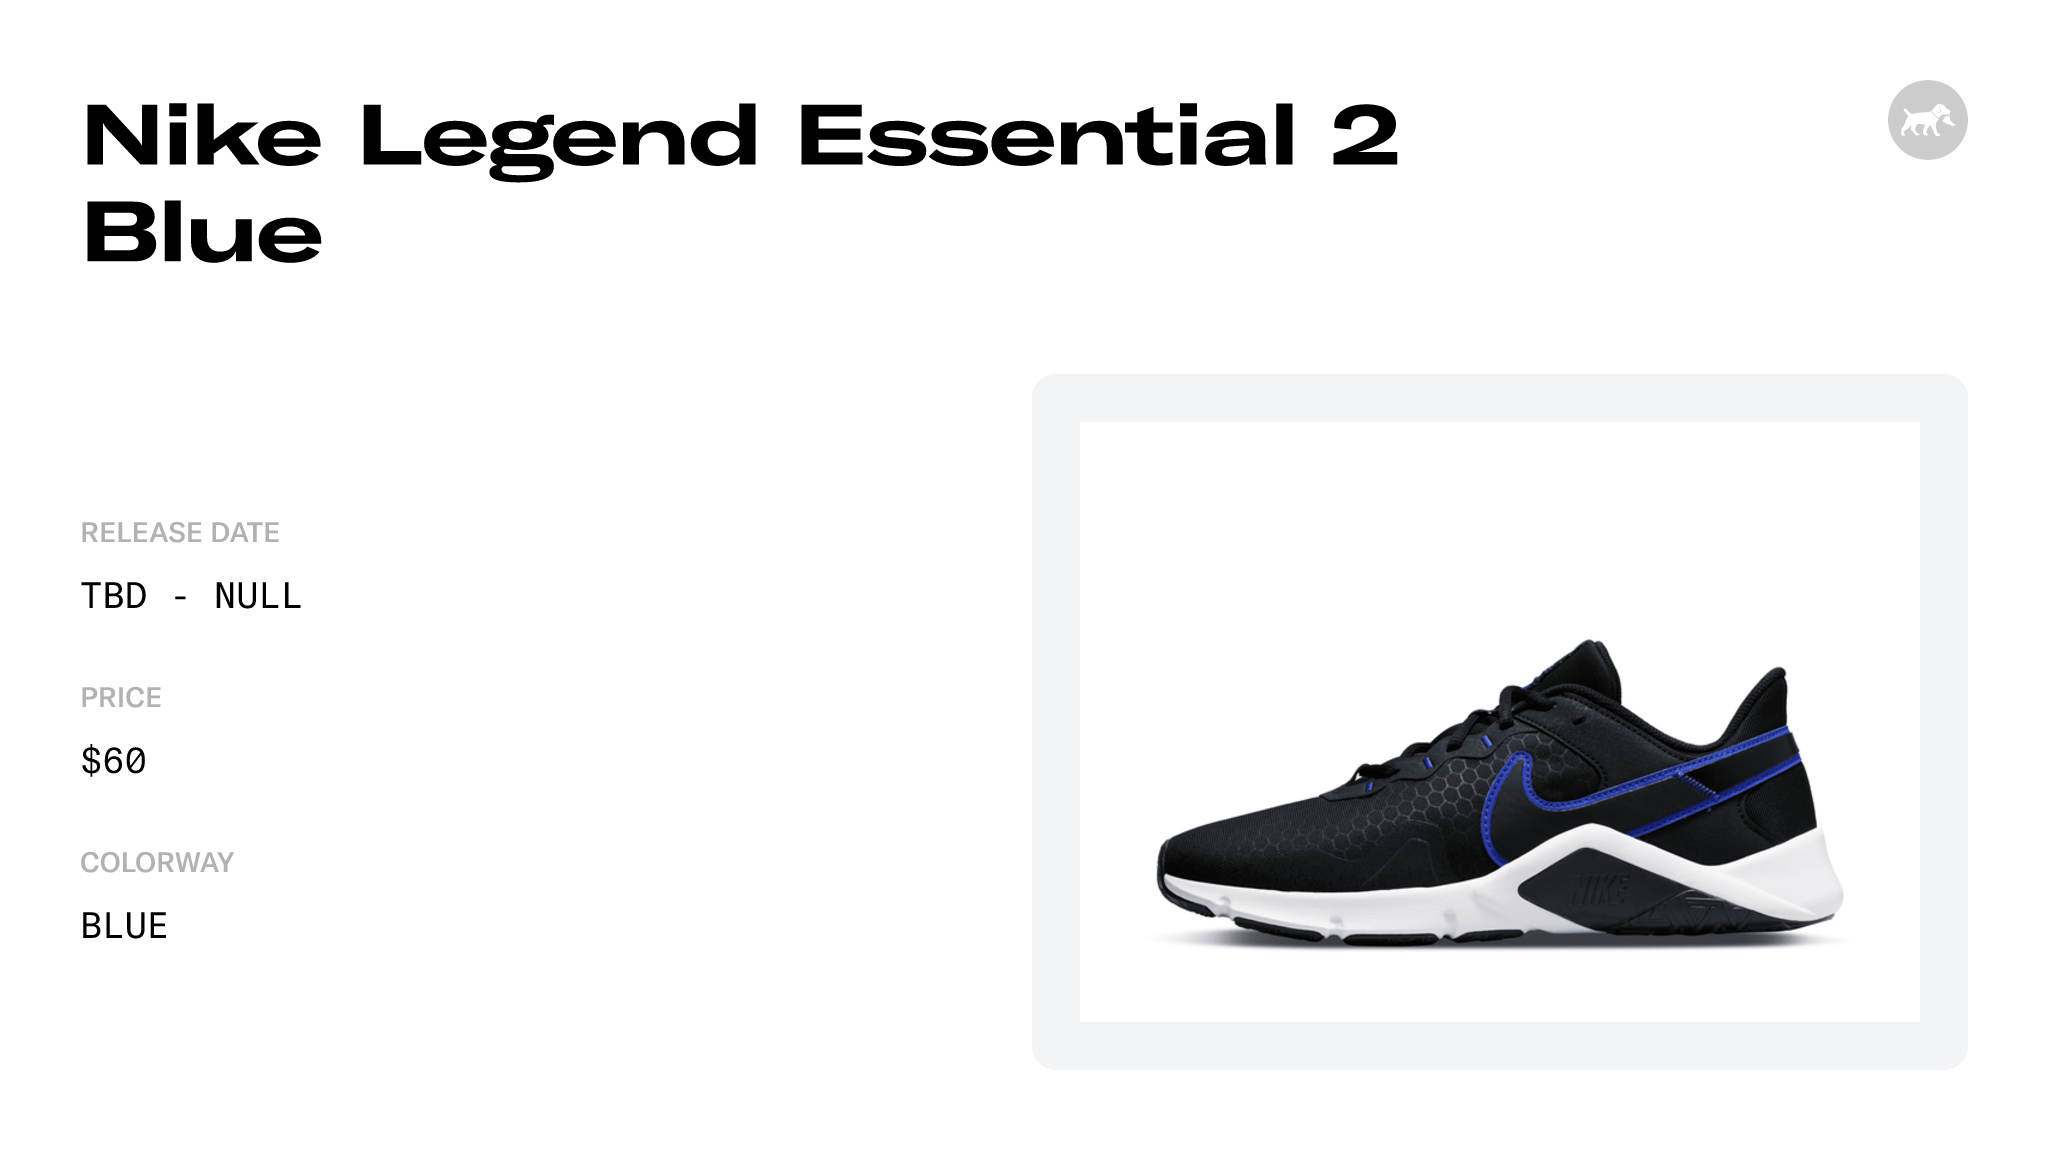 Nike Legend Essential 2 Blue - CQ9356-403 Raffles and Release Date